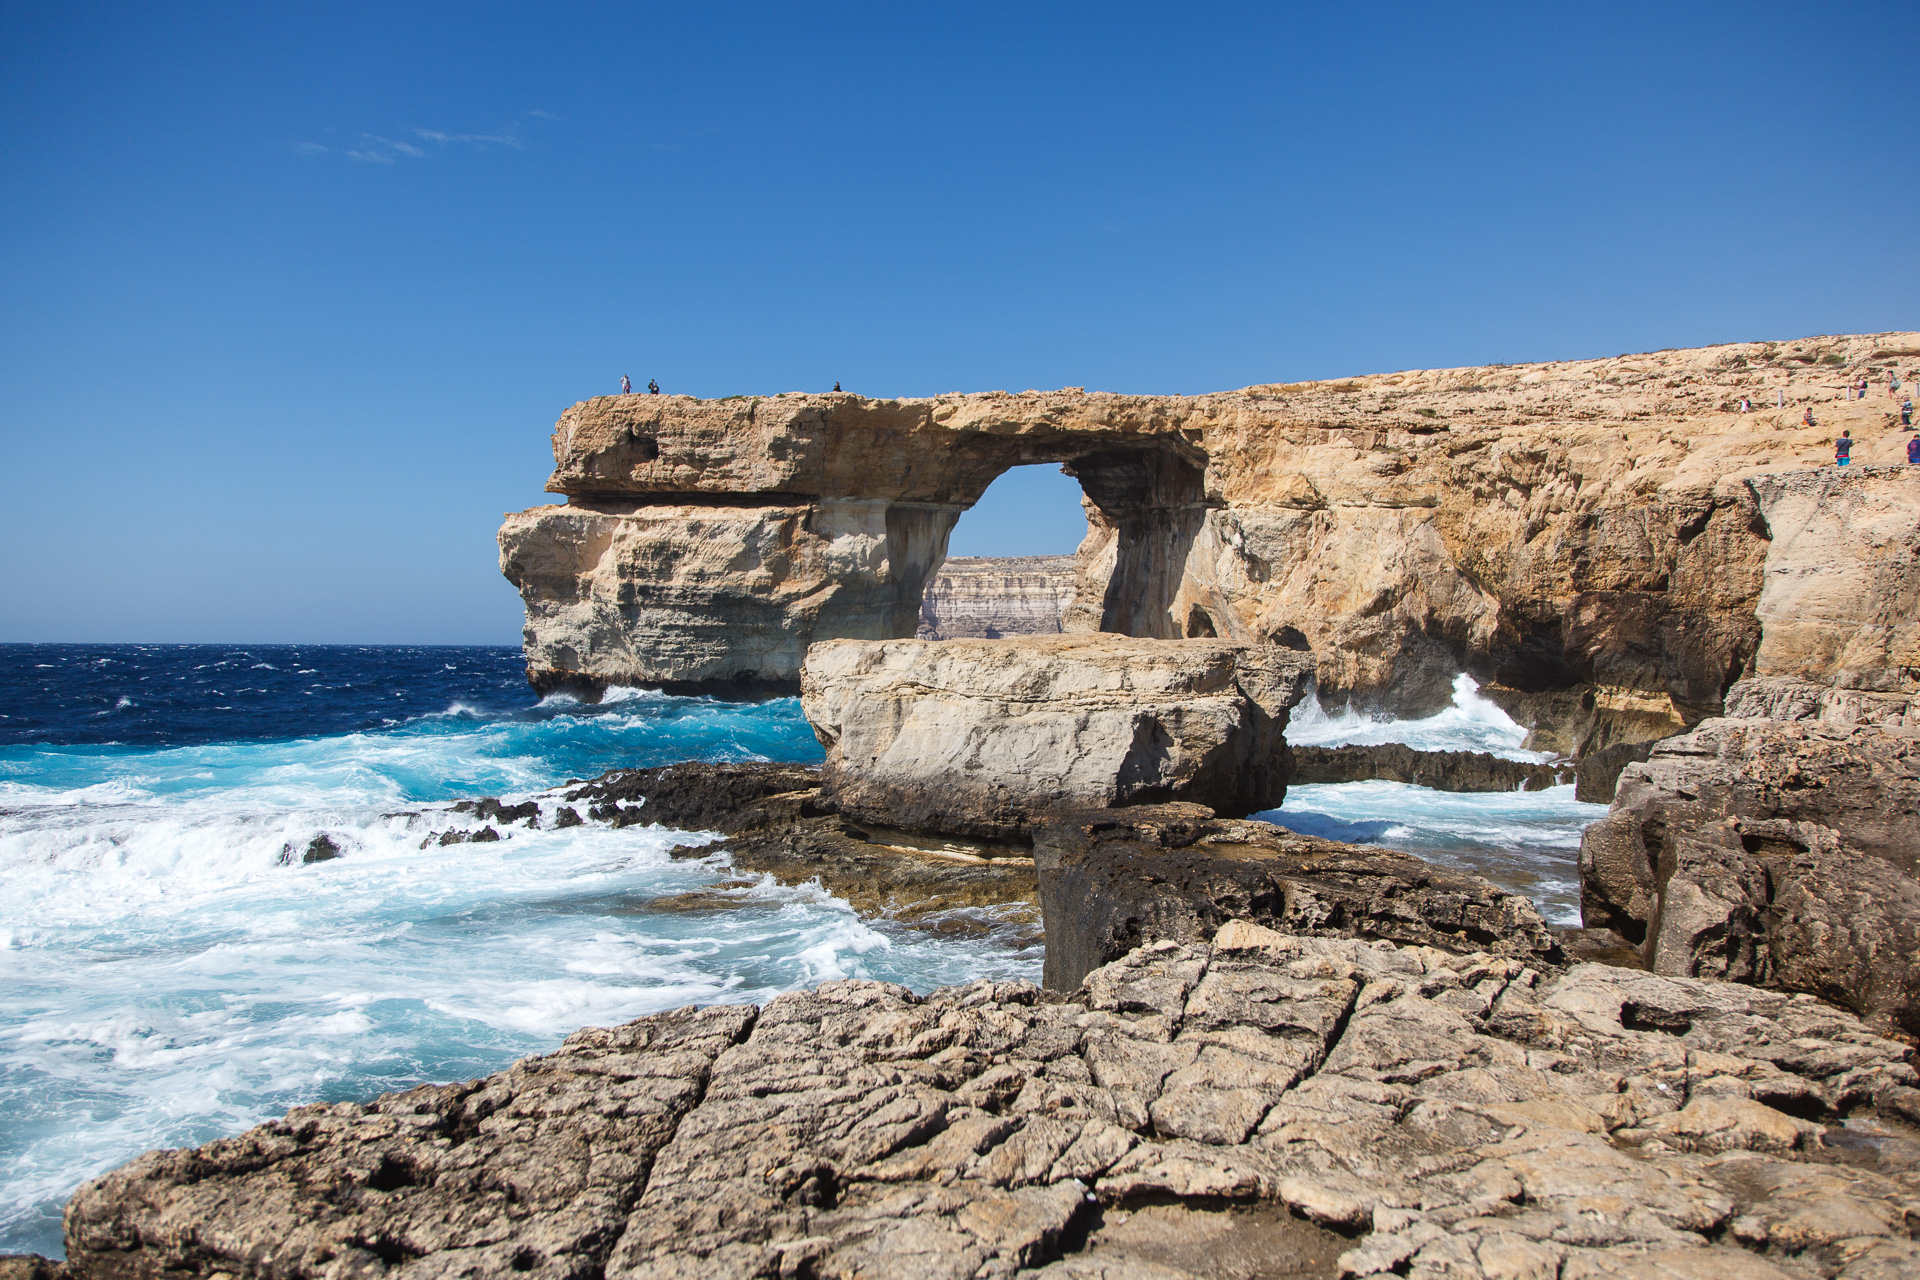 Malta e Gozo